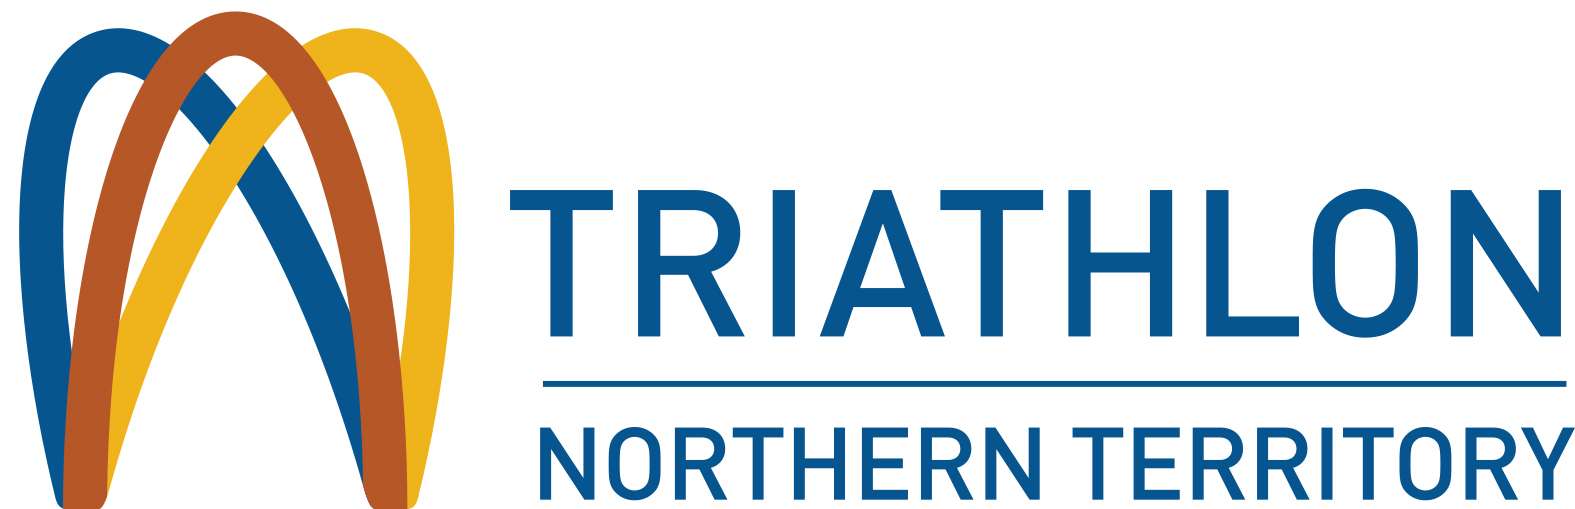 NT logo Landscape 2016